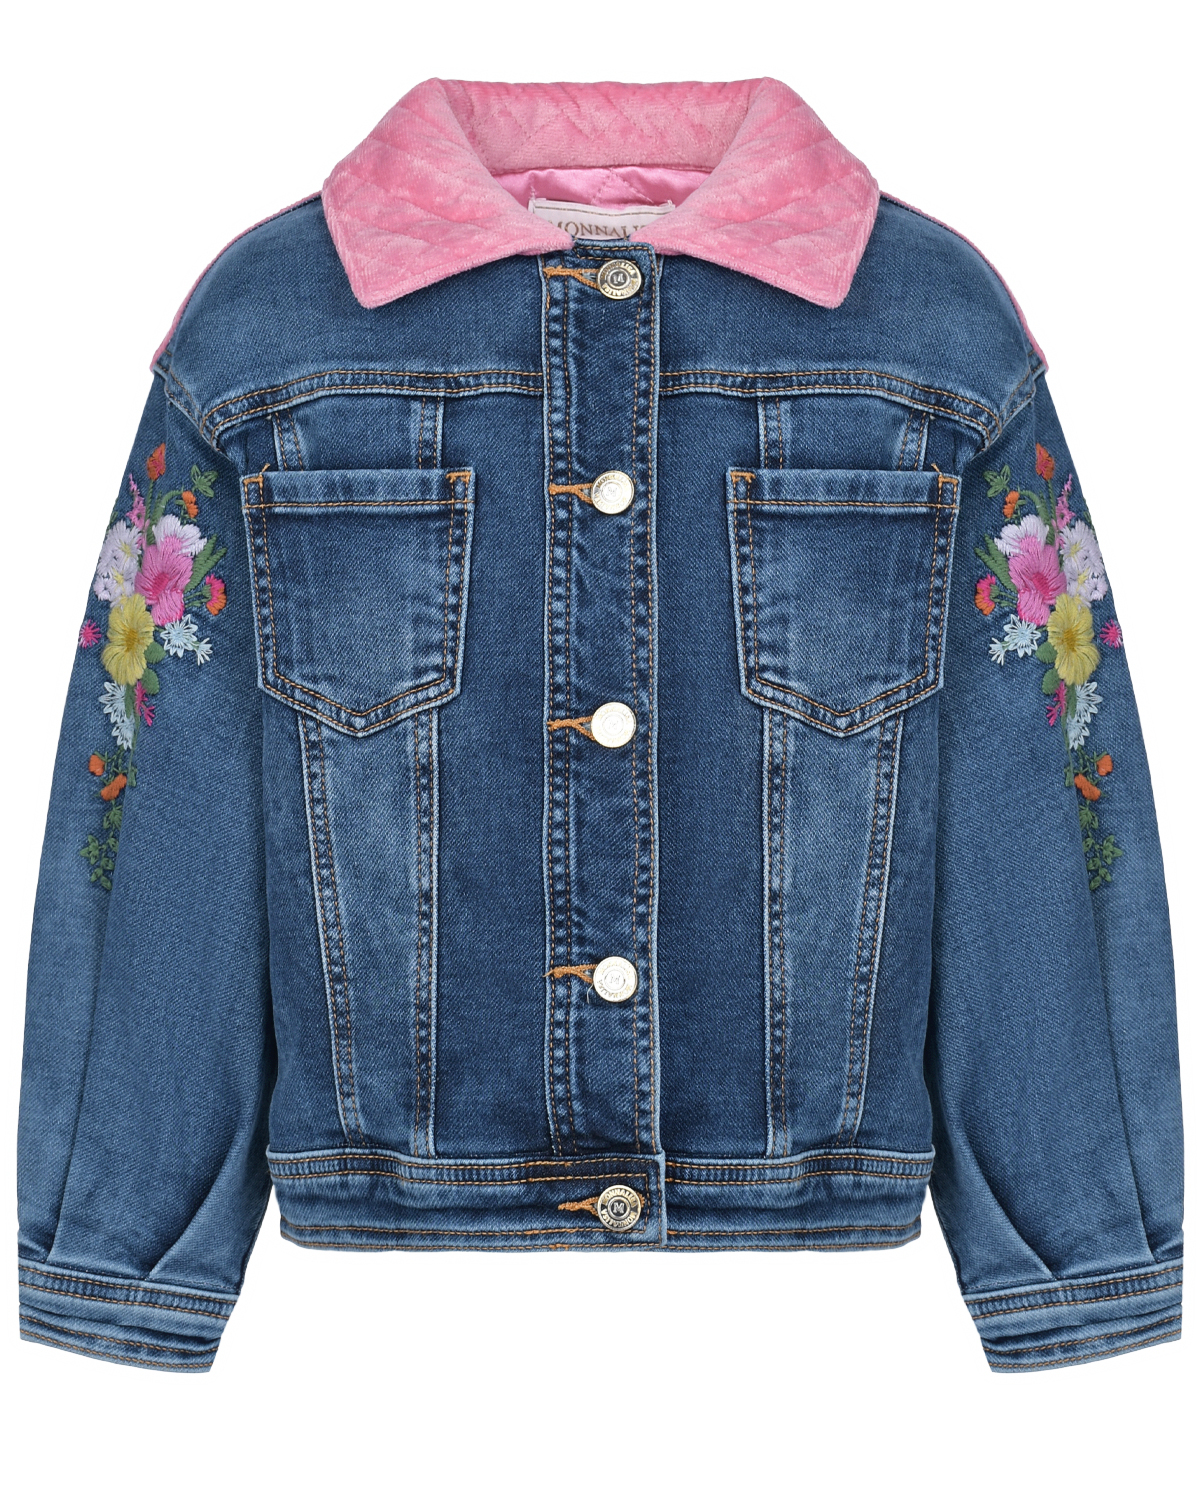 Джинсовая куртка с цветочной вышивкой Monnalisa детская, размер 110